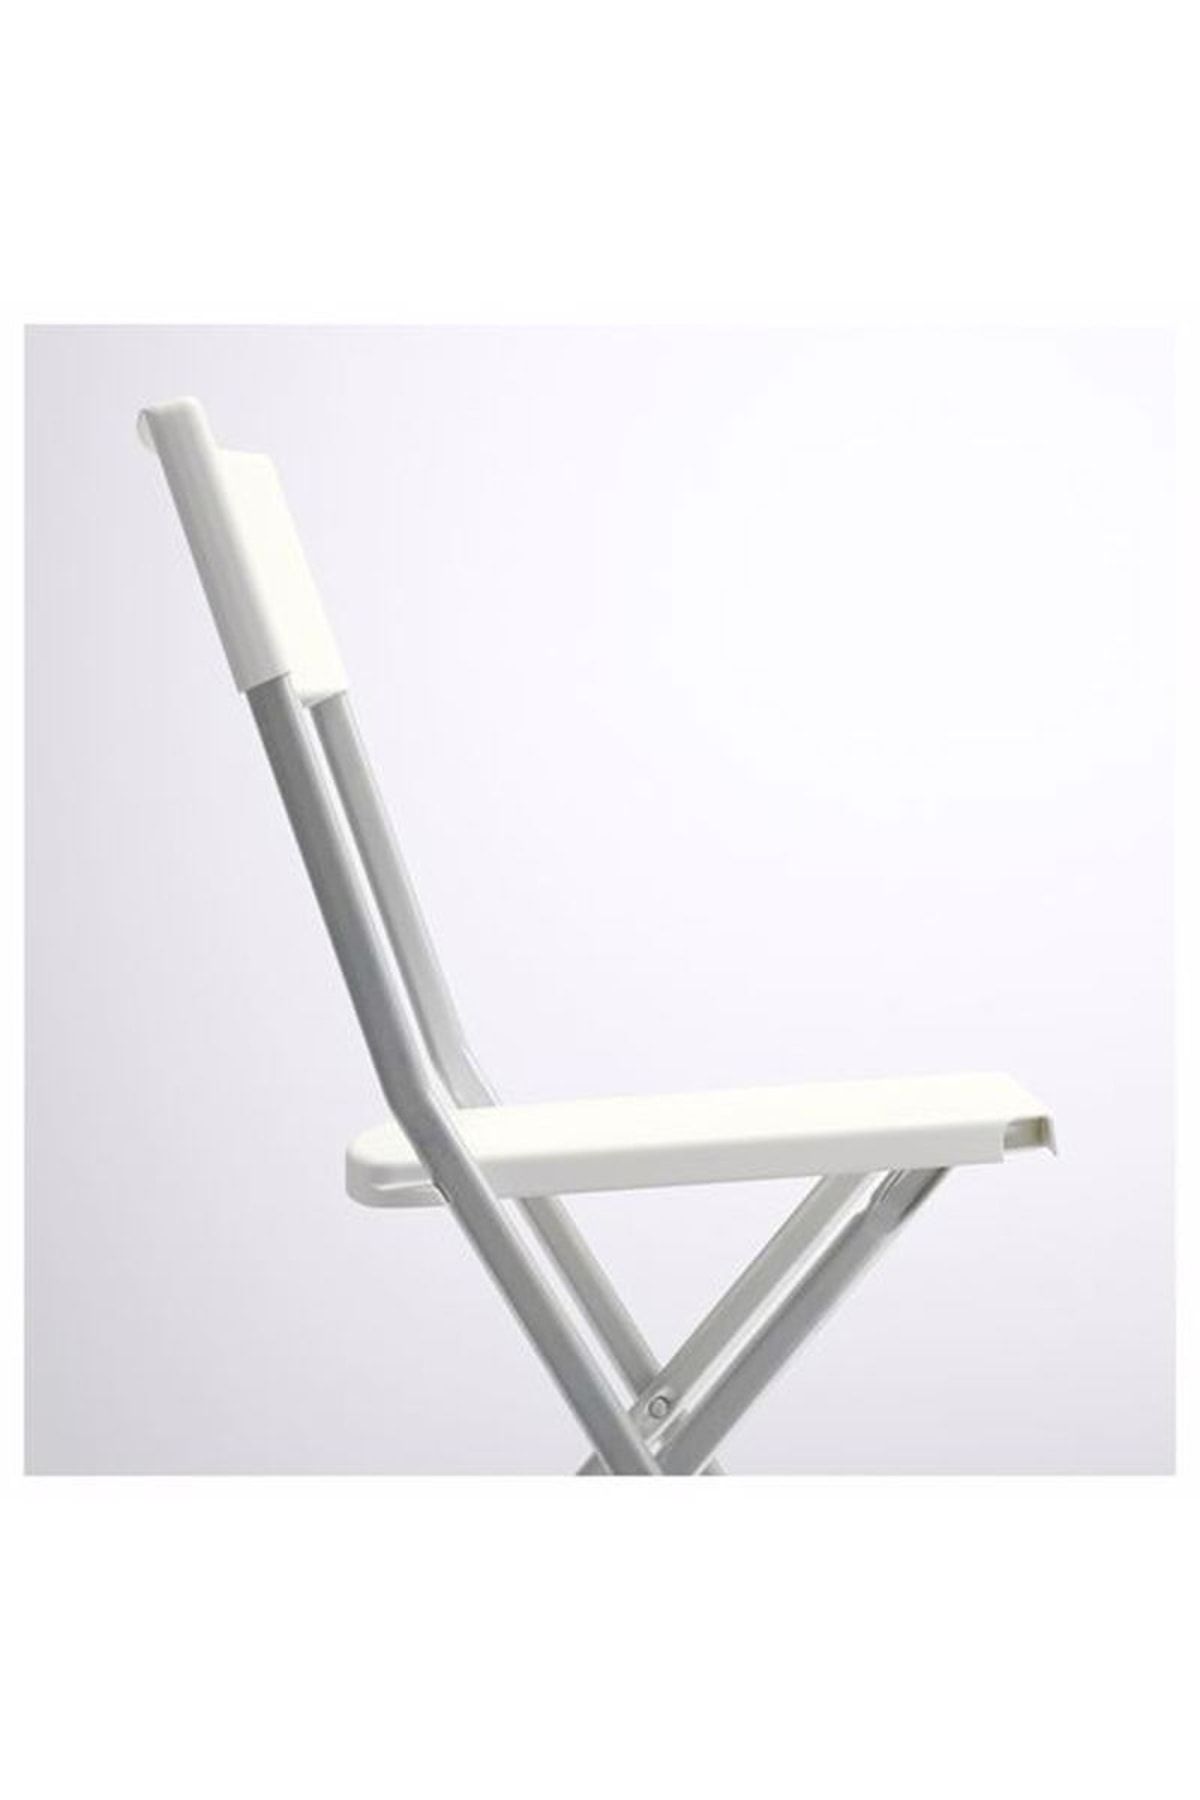 IKEA Gunde Katlanabilir Sandalye, Beyaz